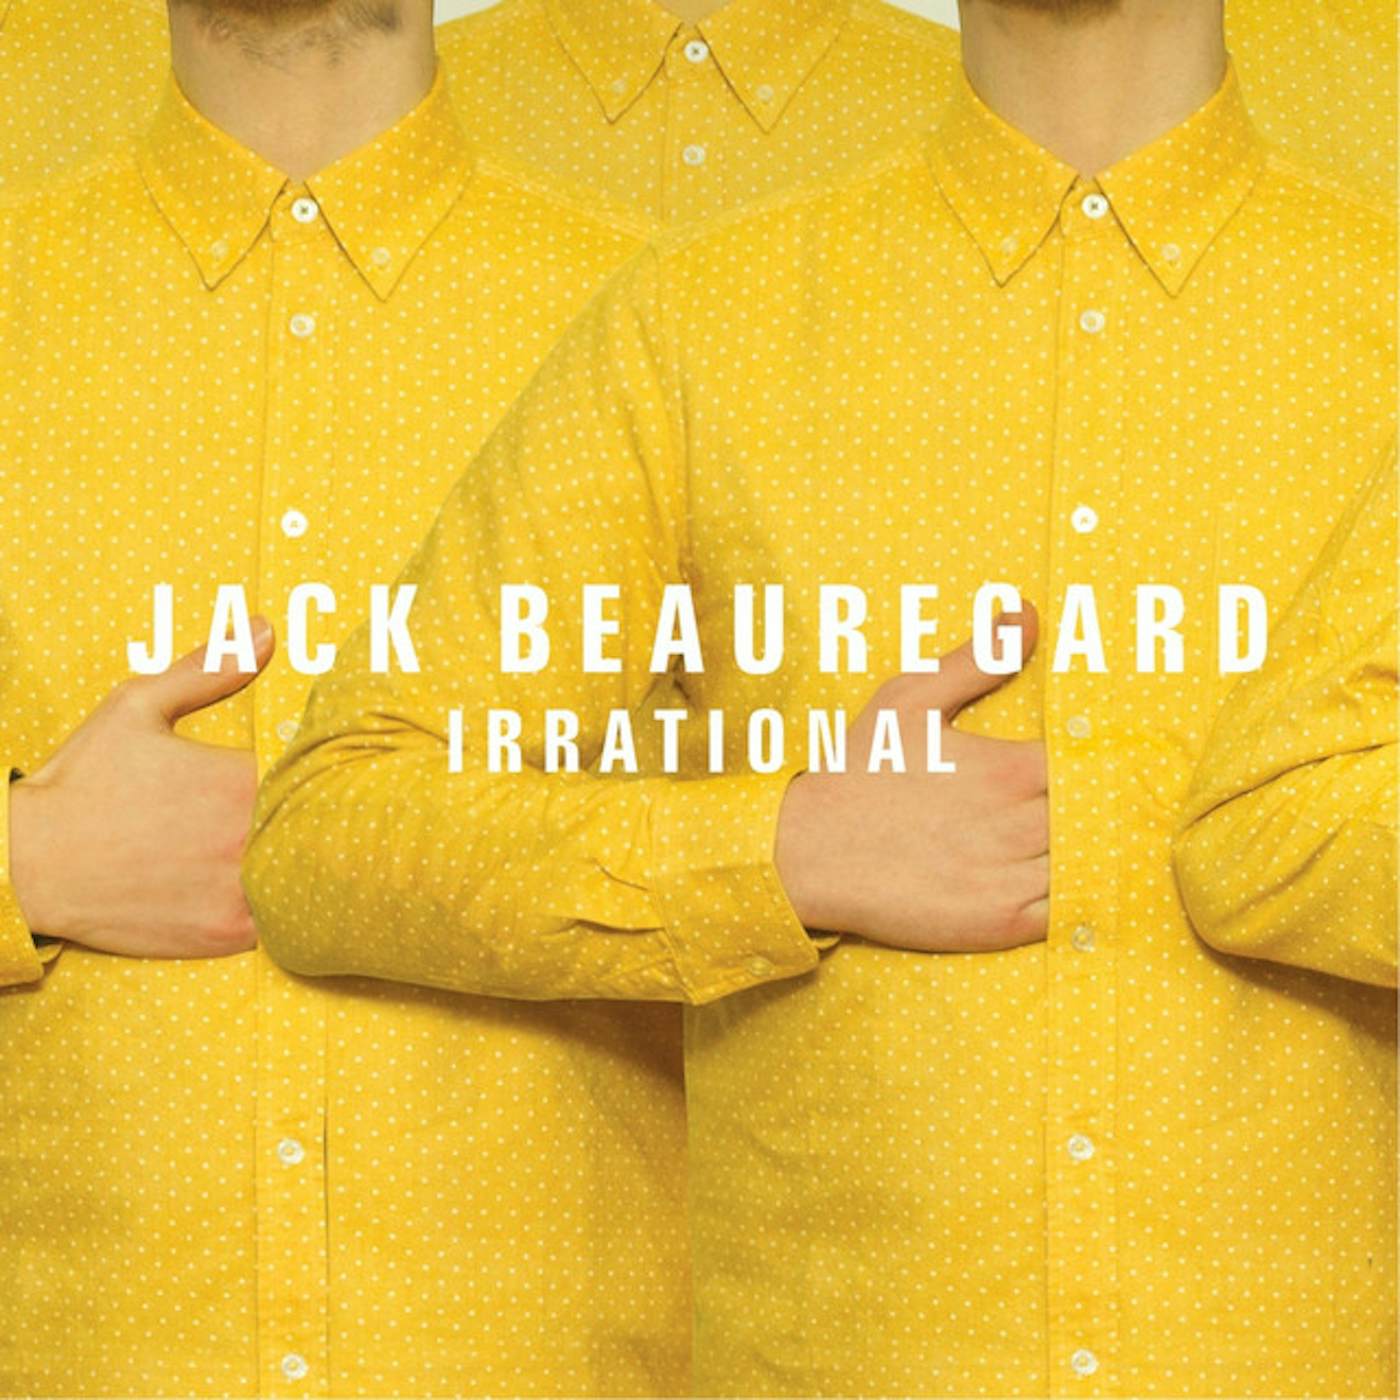 Jack Beauregard Irrational Vinyl Record